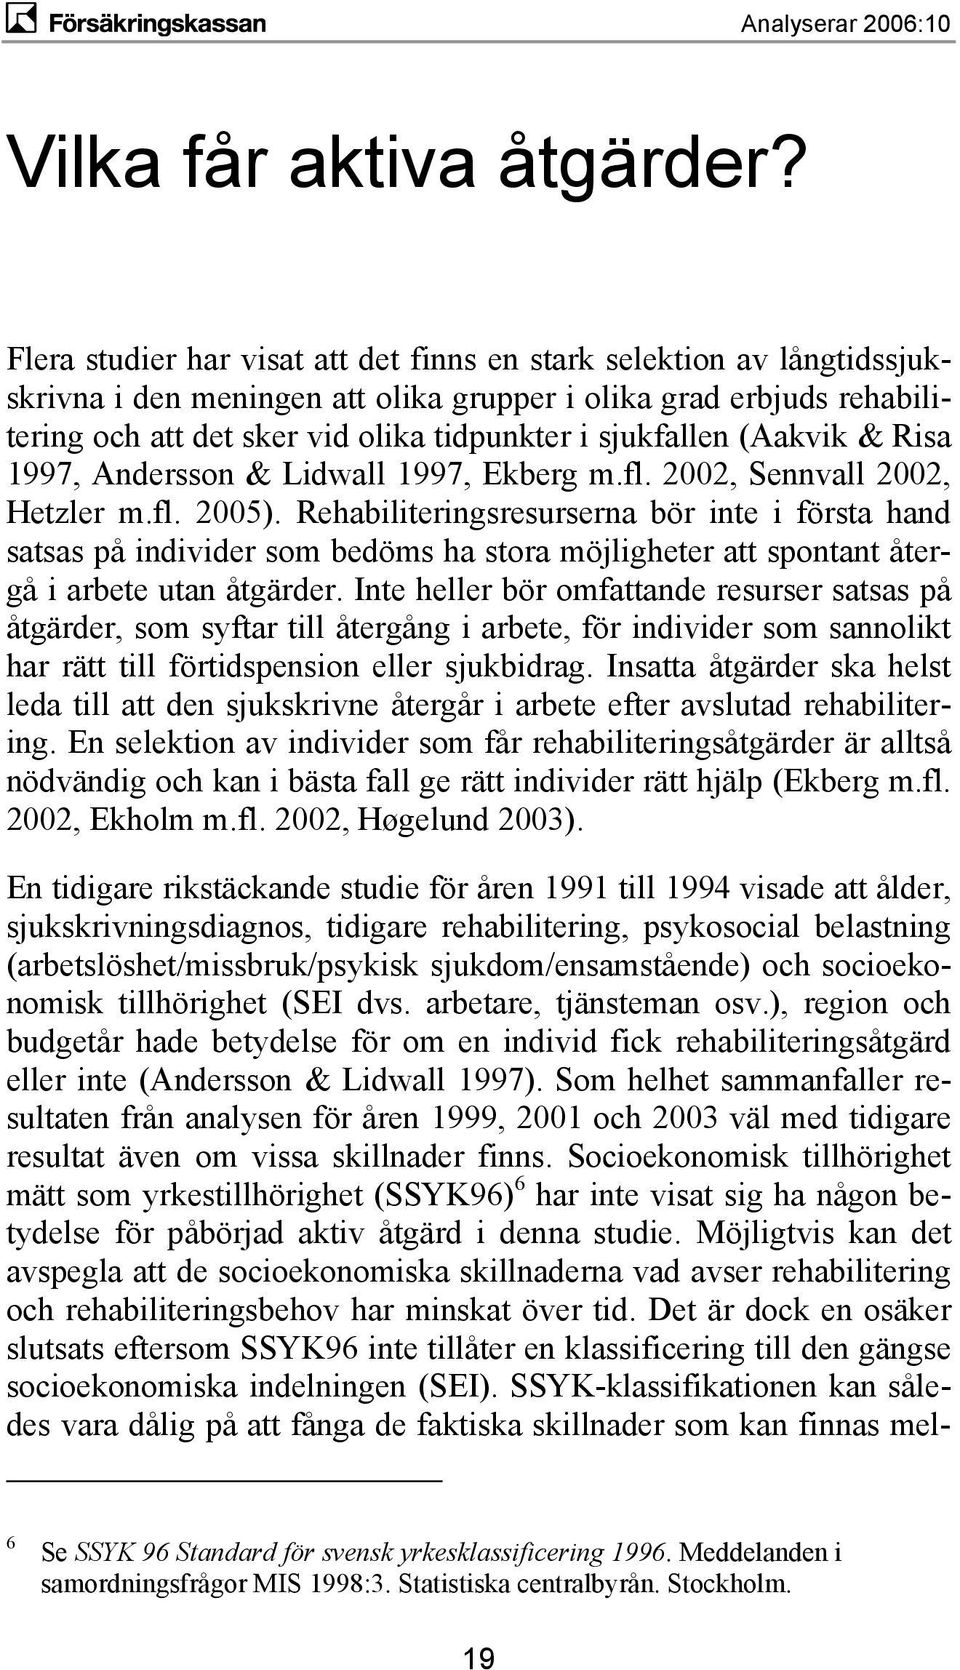 (Aakvik & Risa 1997, Andersson & Lidwall 1997, Ekberg m.fl. 2002, Sennvall 2002, Hetzler m.fl. 2005).